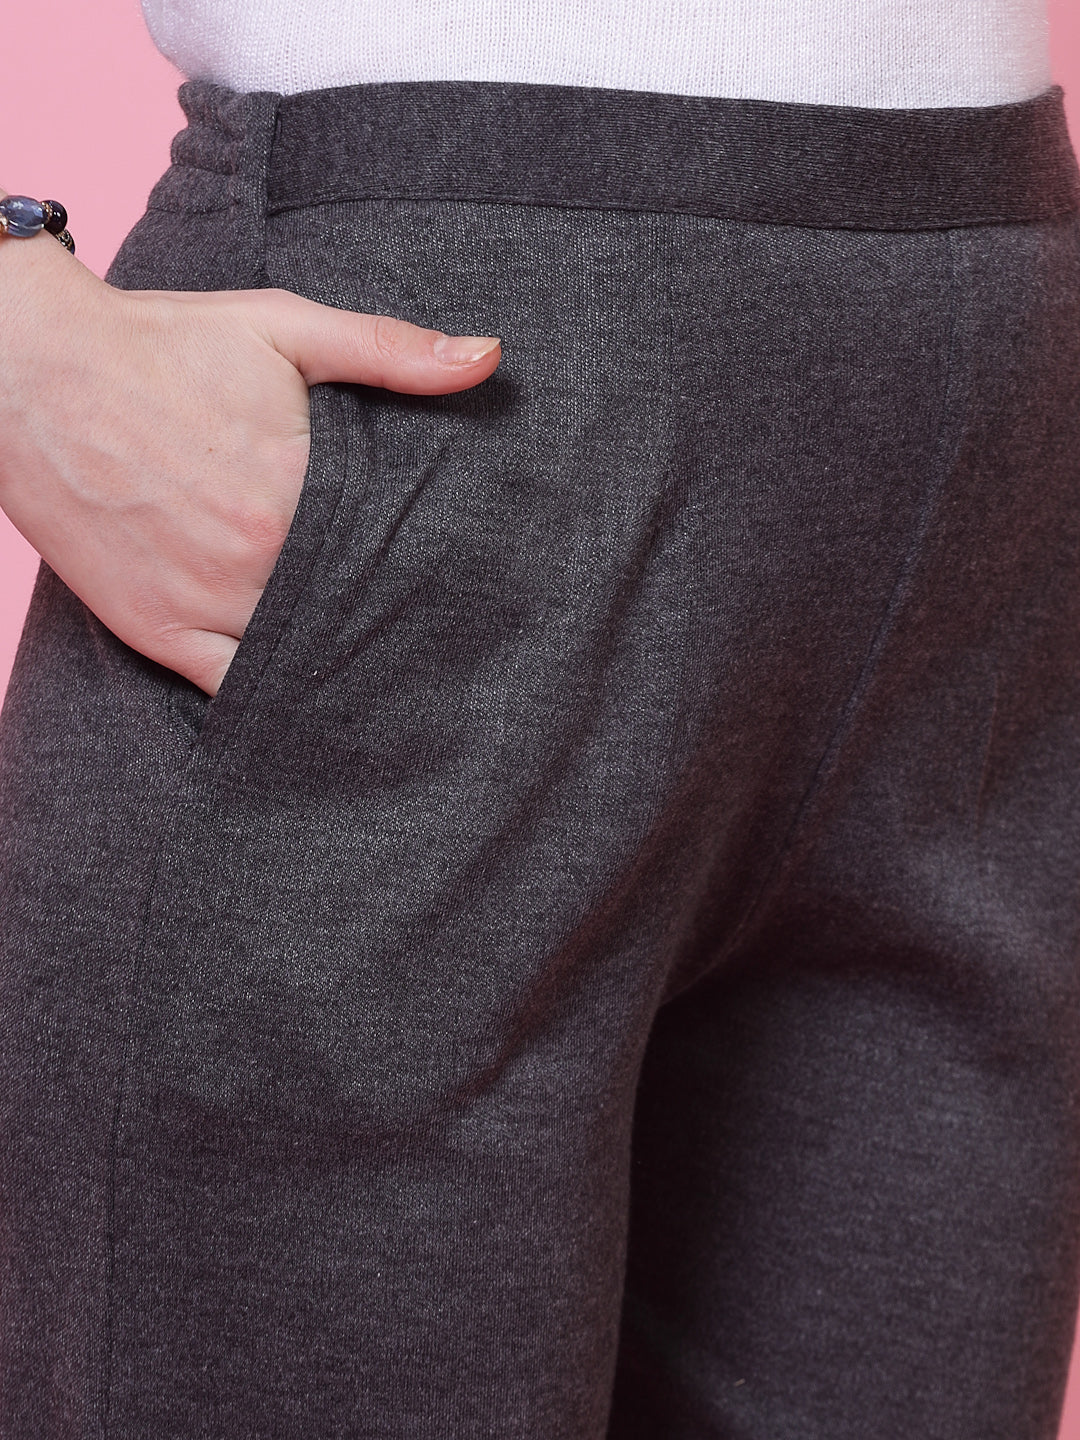 Dark Grey & Dark Fawn Solid Woollen Trouser (Pack of 2)